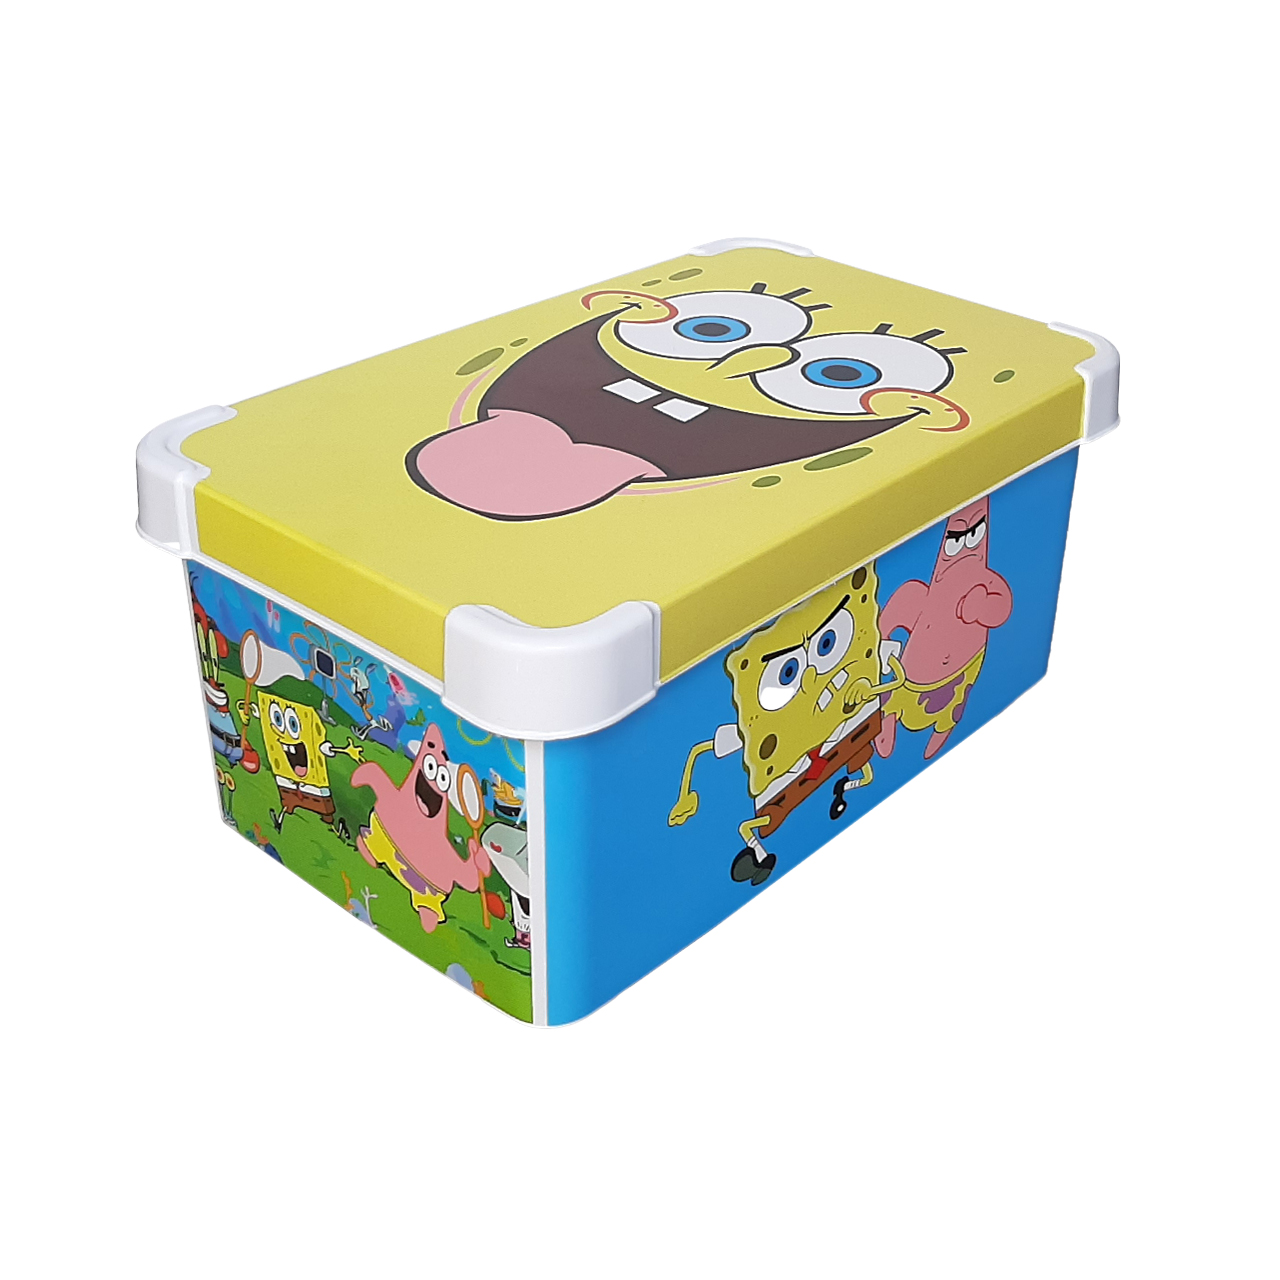 جعبه اسباب بازی کودک مدل Sponge Bob